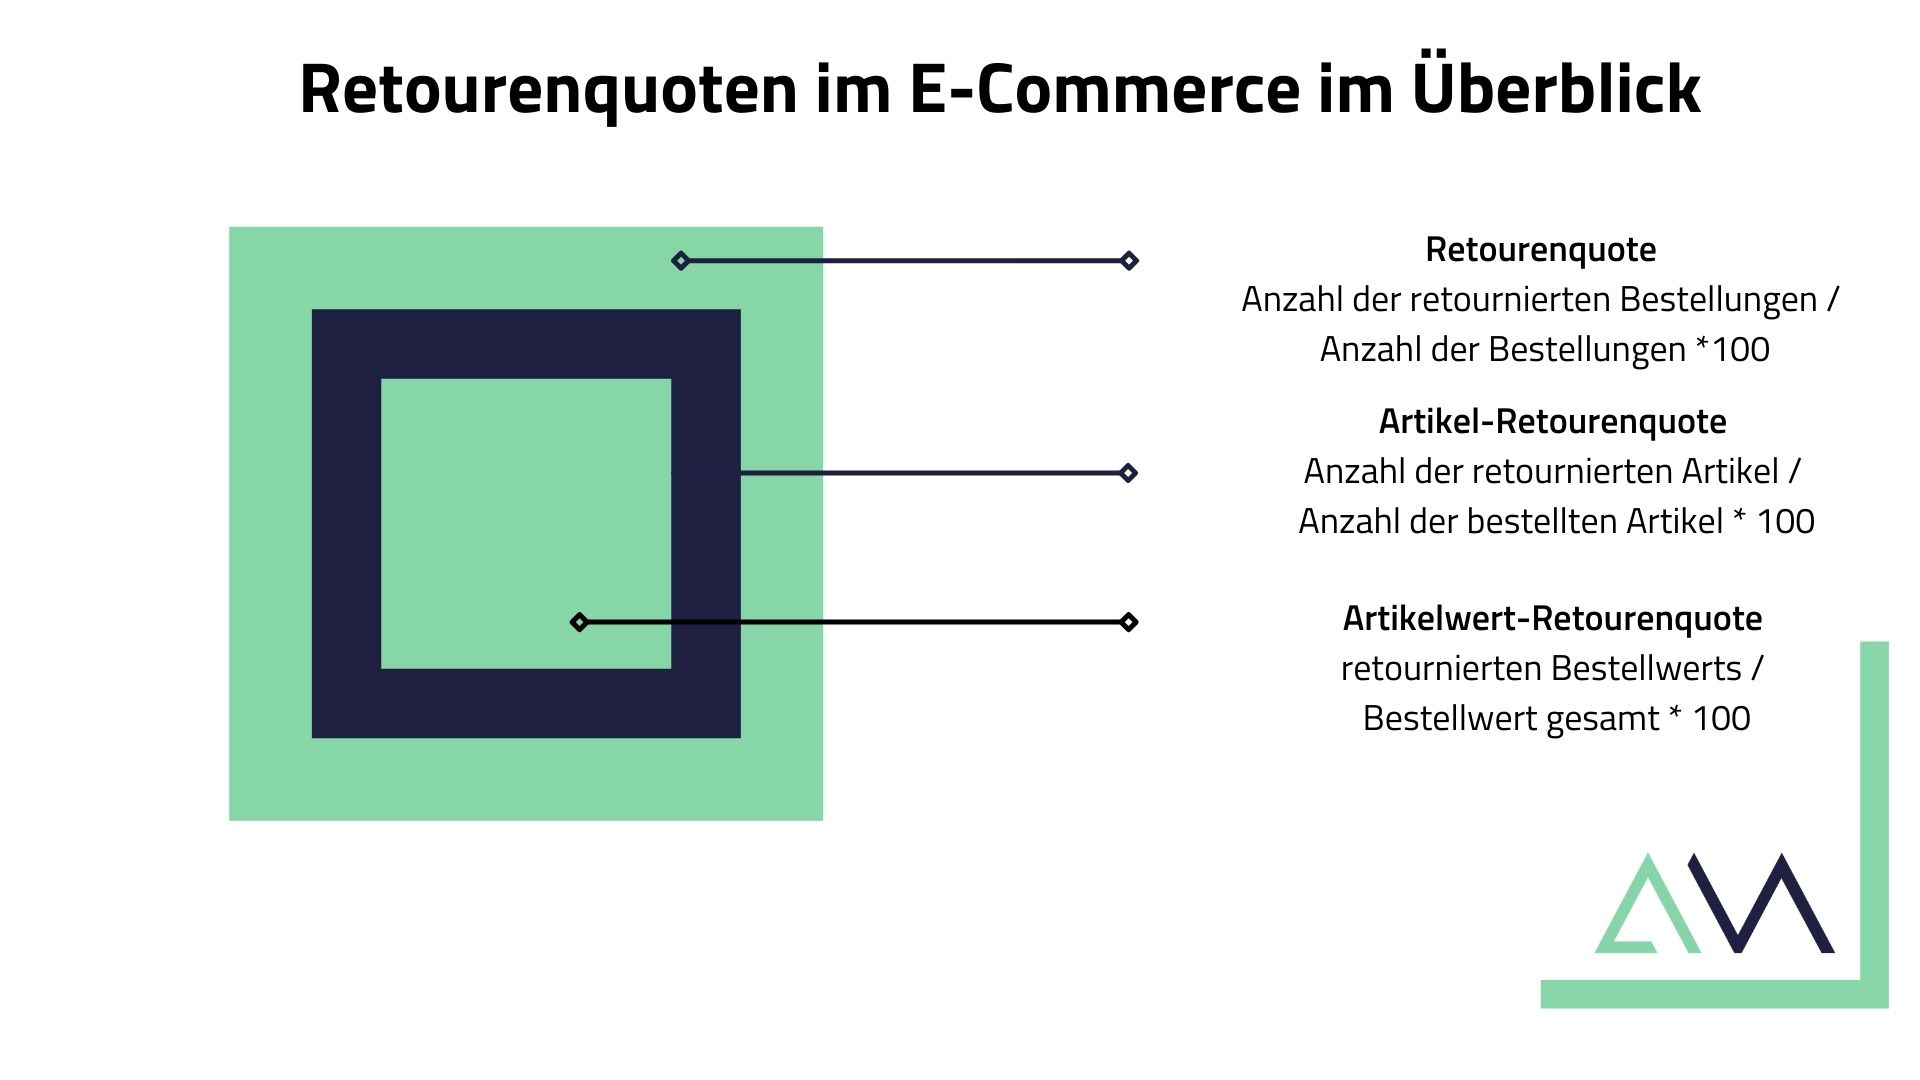 Retourenquoten im E-Commerce im Überblick (1)